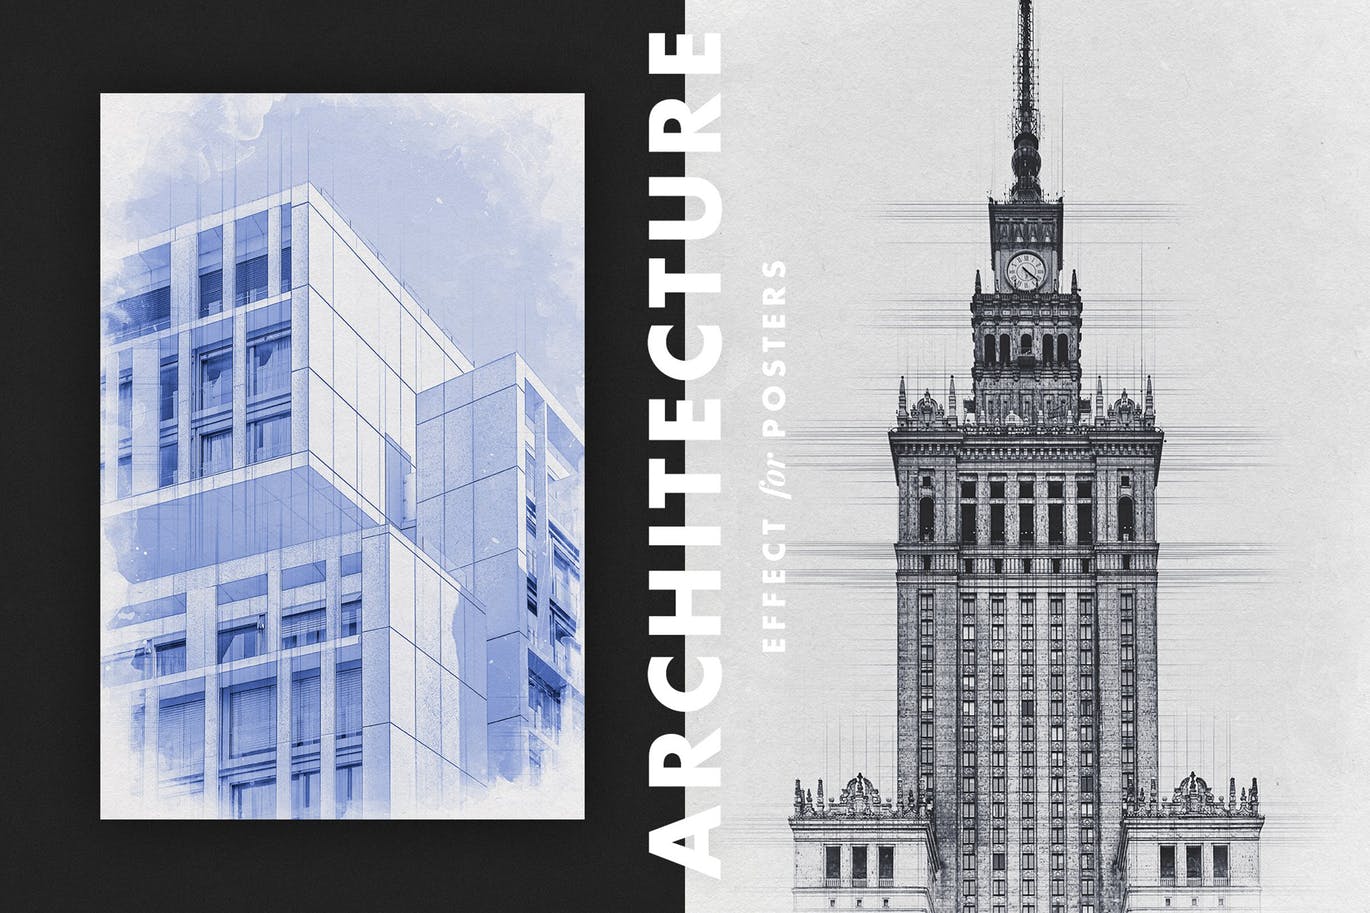 建筑草图效果海报模板 Architecture Sketch Effect for Posters 插件预设 第1张